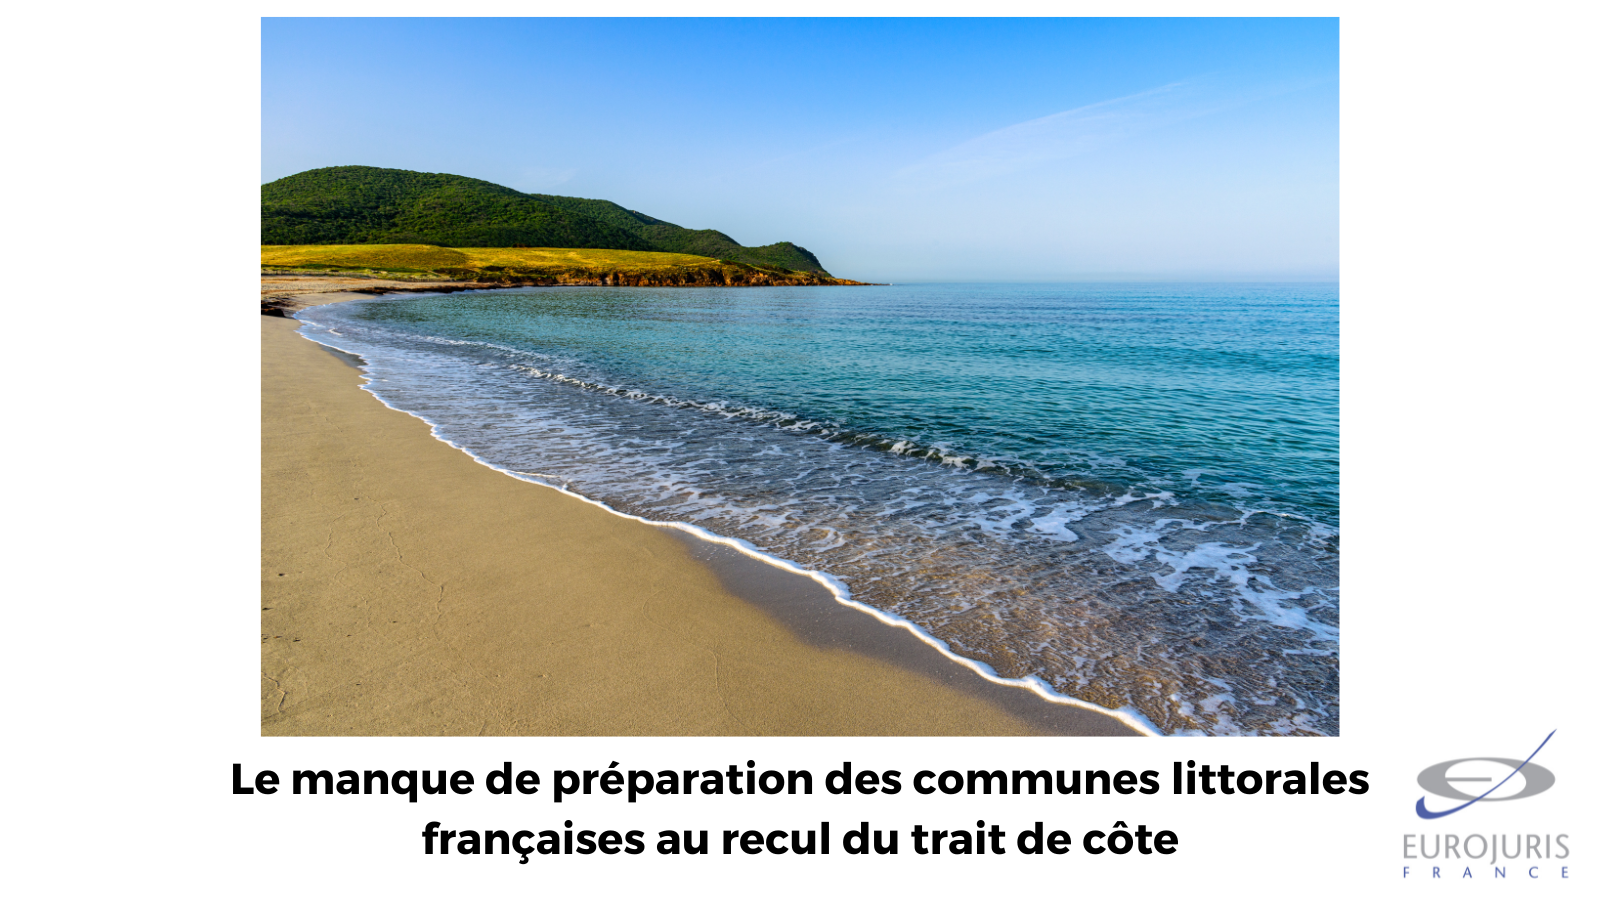 Le manque de préparation des communes littorales françaises au recul du trait de côte